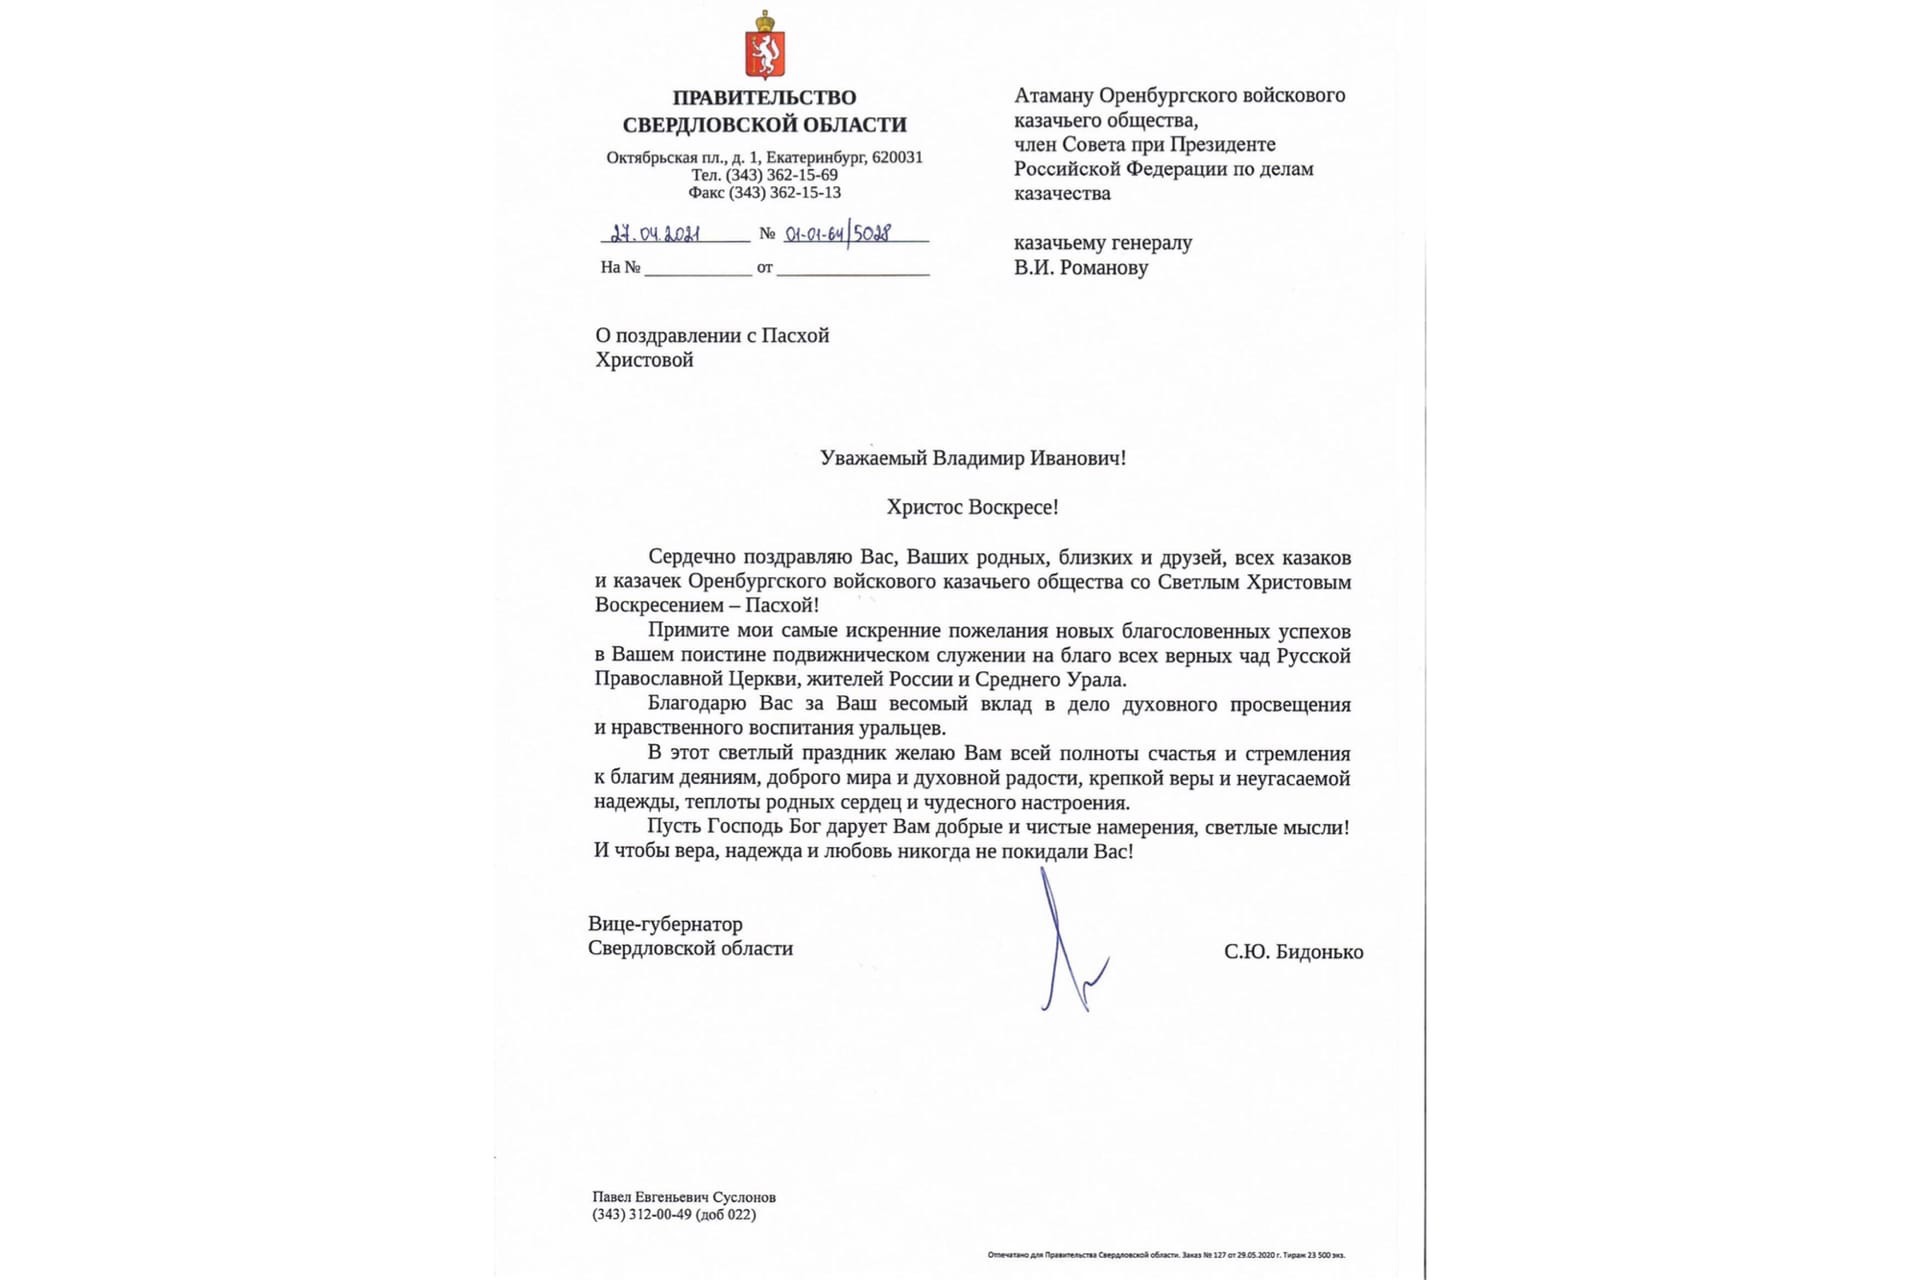 Поздравление с Пасхой от вице-губернатора Свердловской области С.Ю. Бидонько